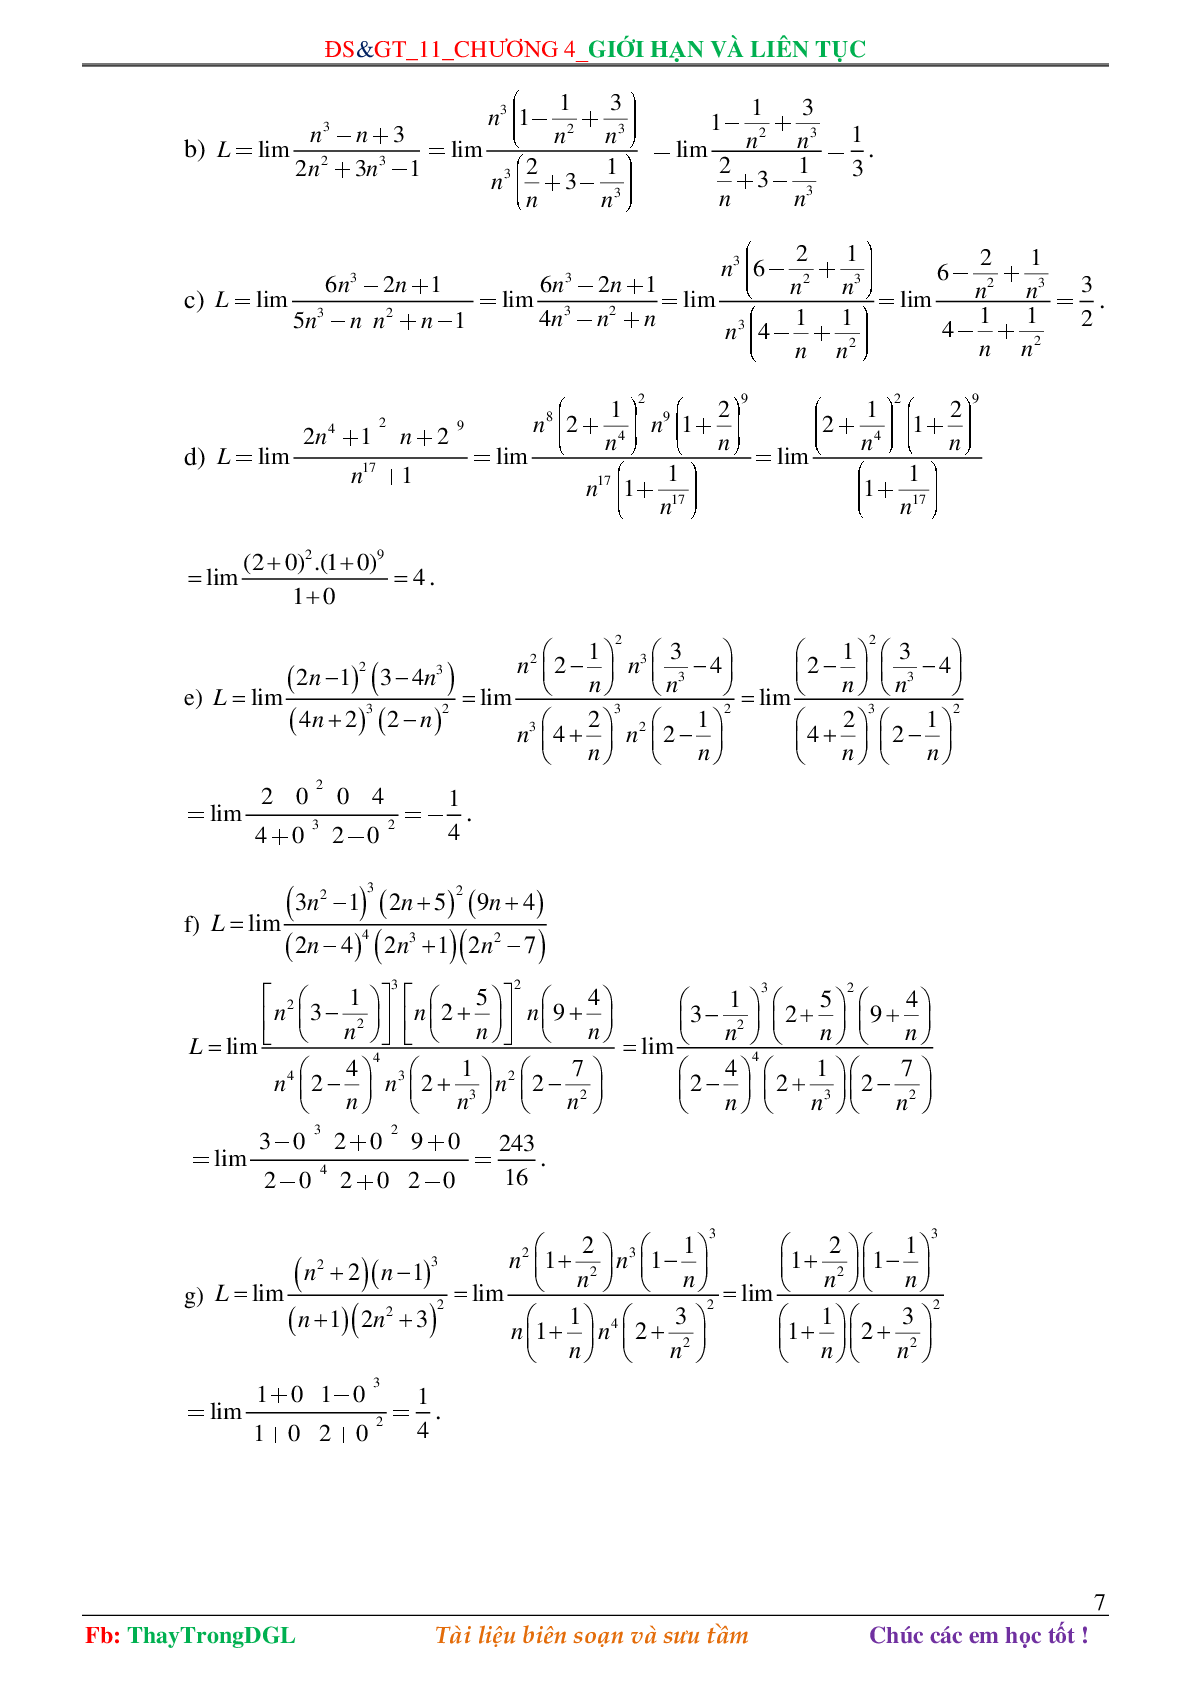 Các dạng toán về Giới hạn và liên tục (có bài tập kèm theo) (trang 7)